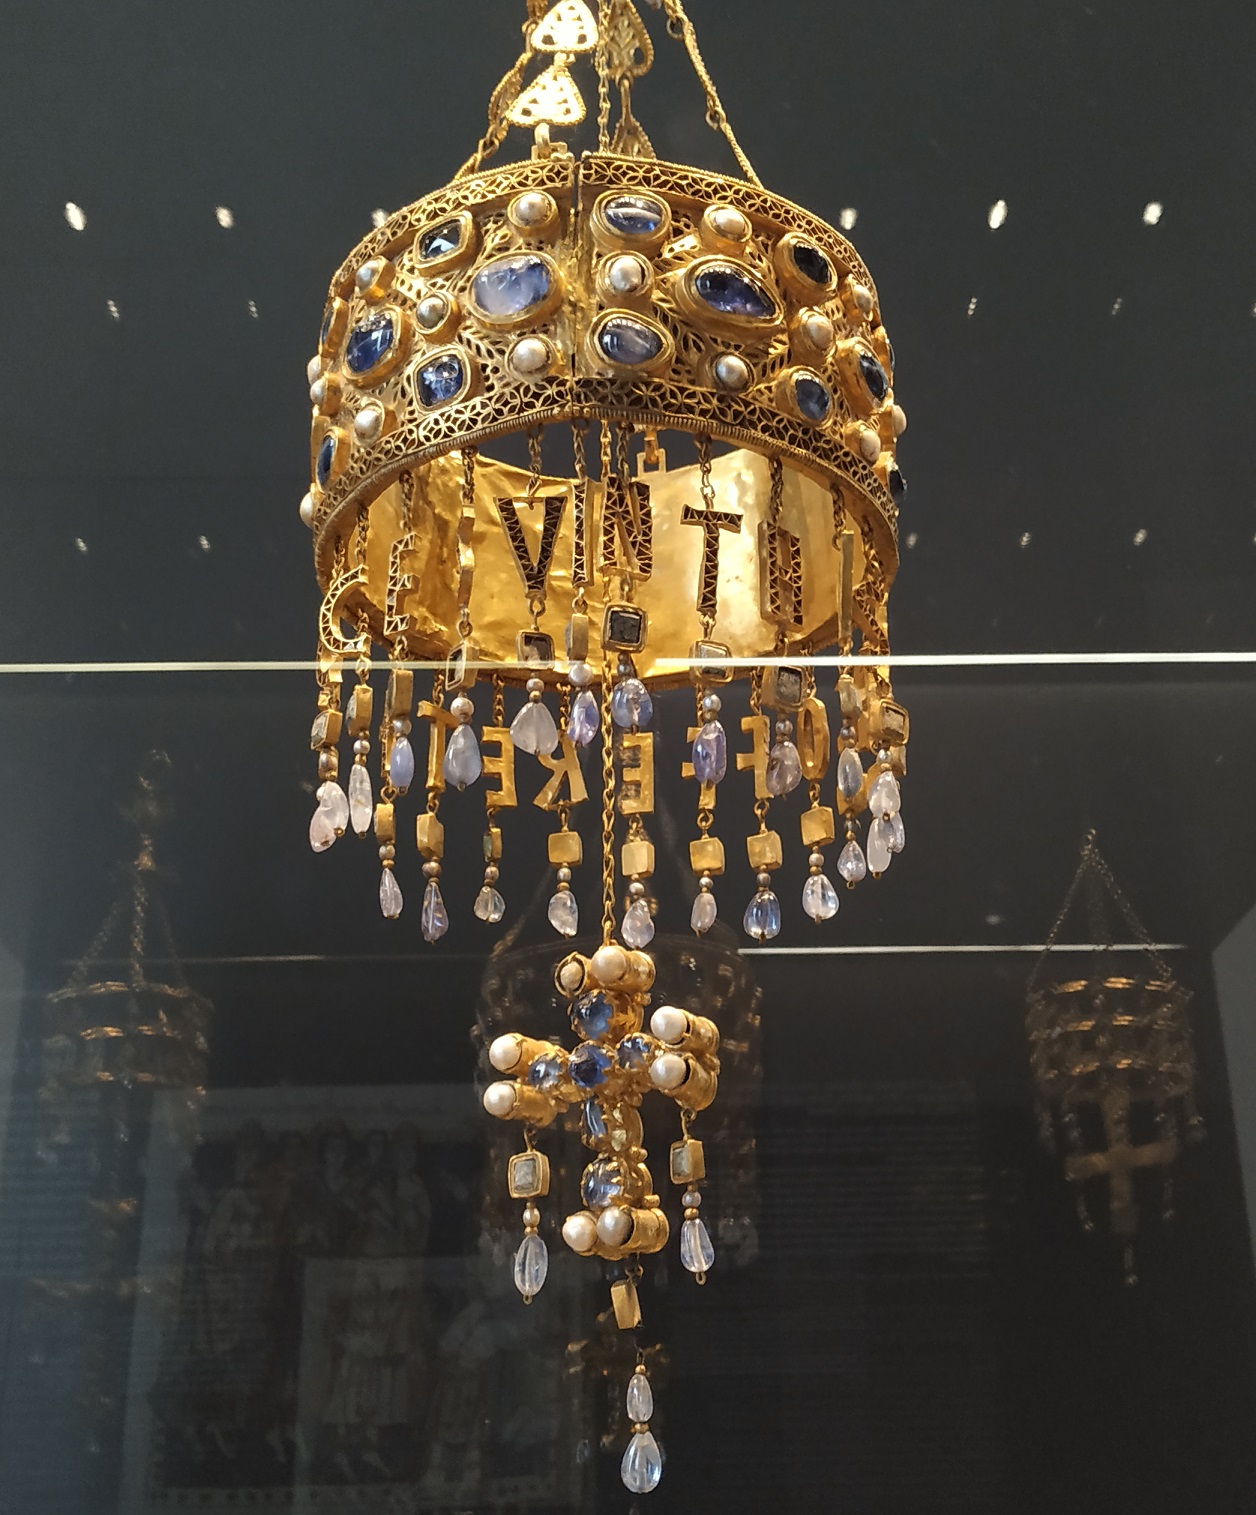 Tesoro de Guarrazar (Guadamur, Toledo) en el Museo Arqueológico Nacional de Madrid. Conjunto de coronas hechas a base de oro y piedras preciosas.